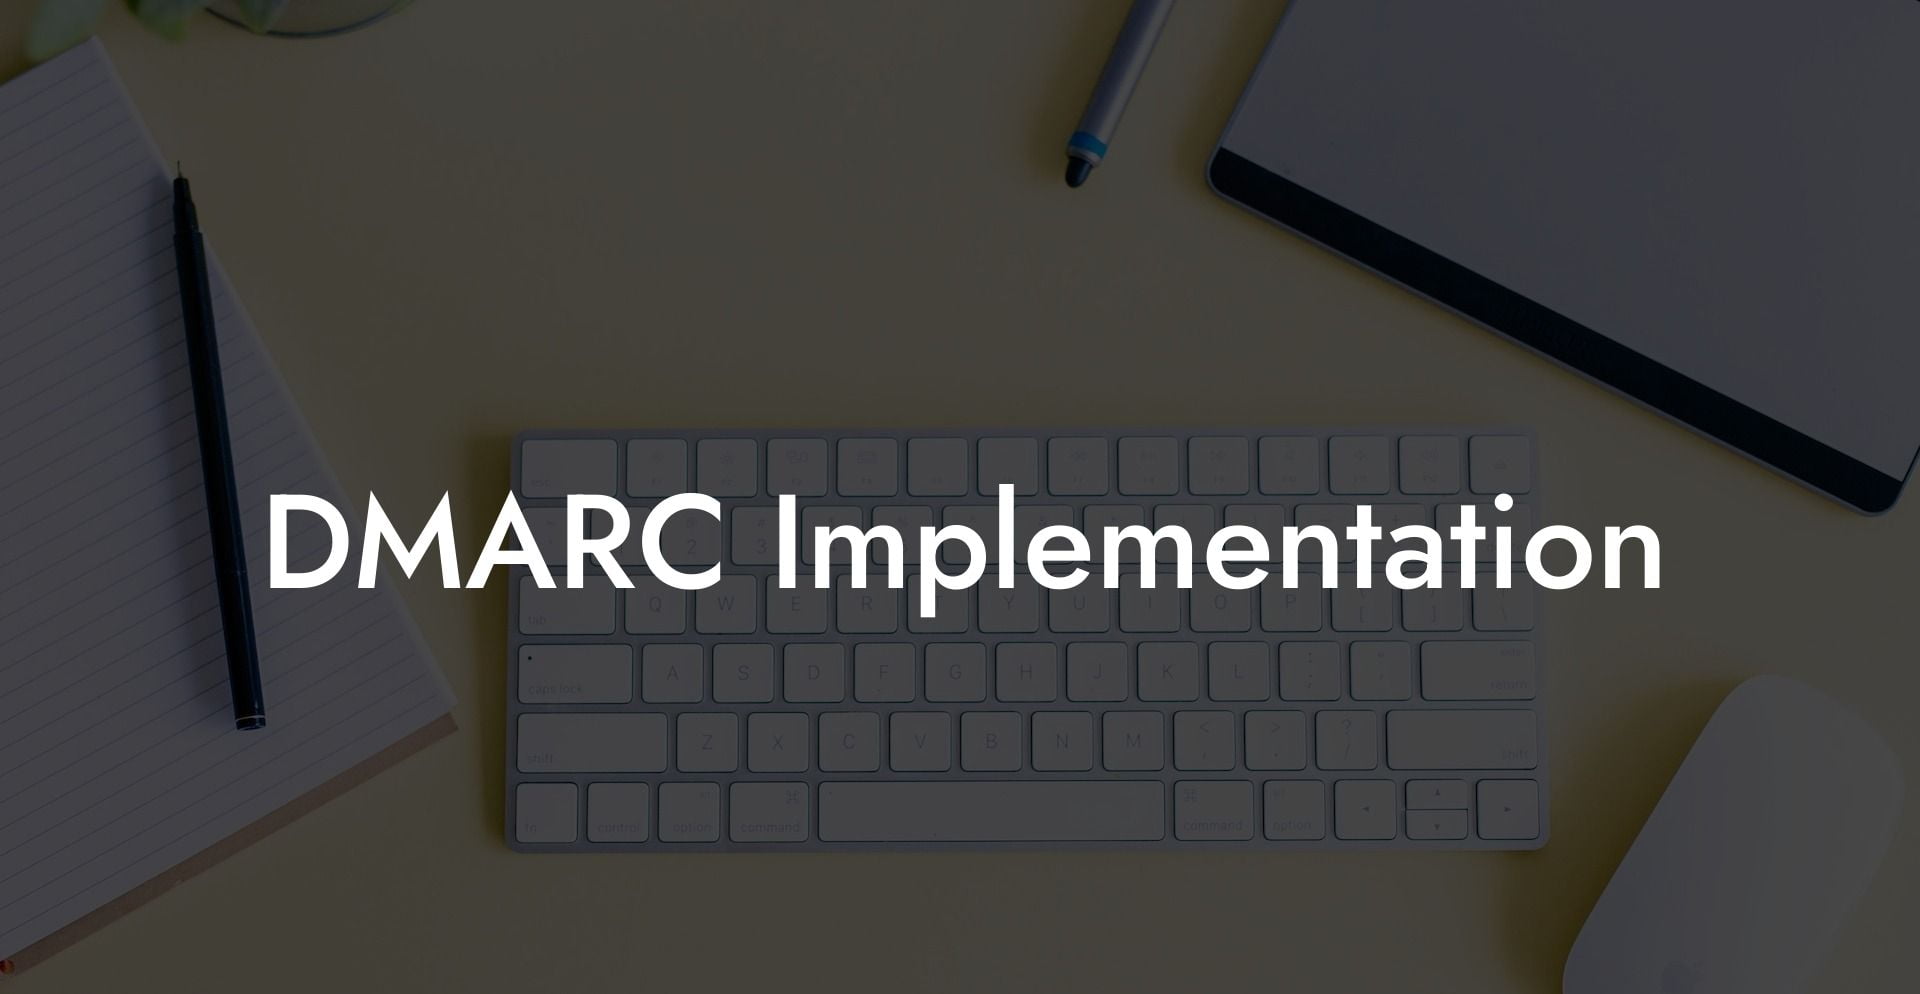 DMARC Implementation